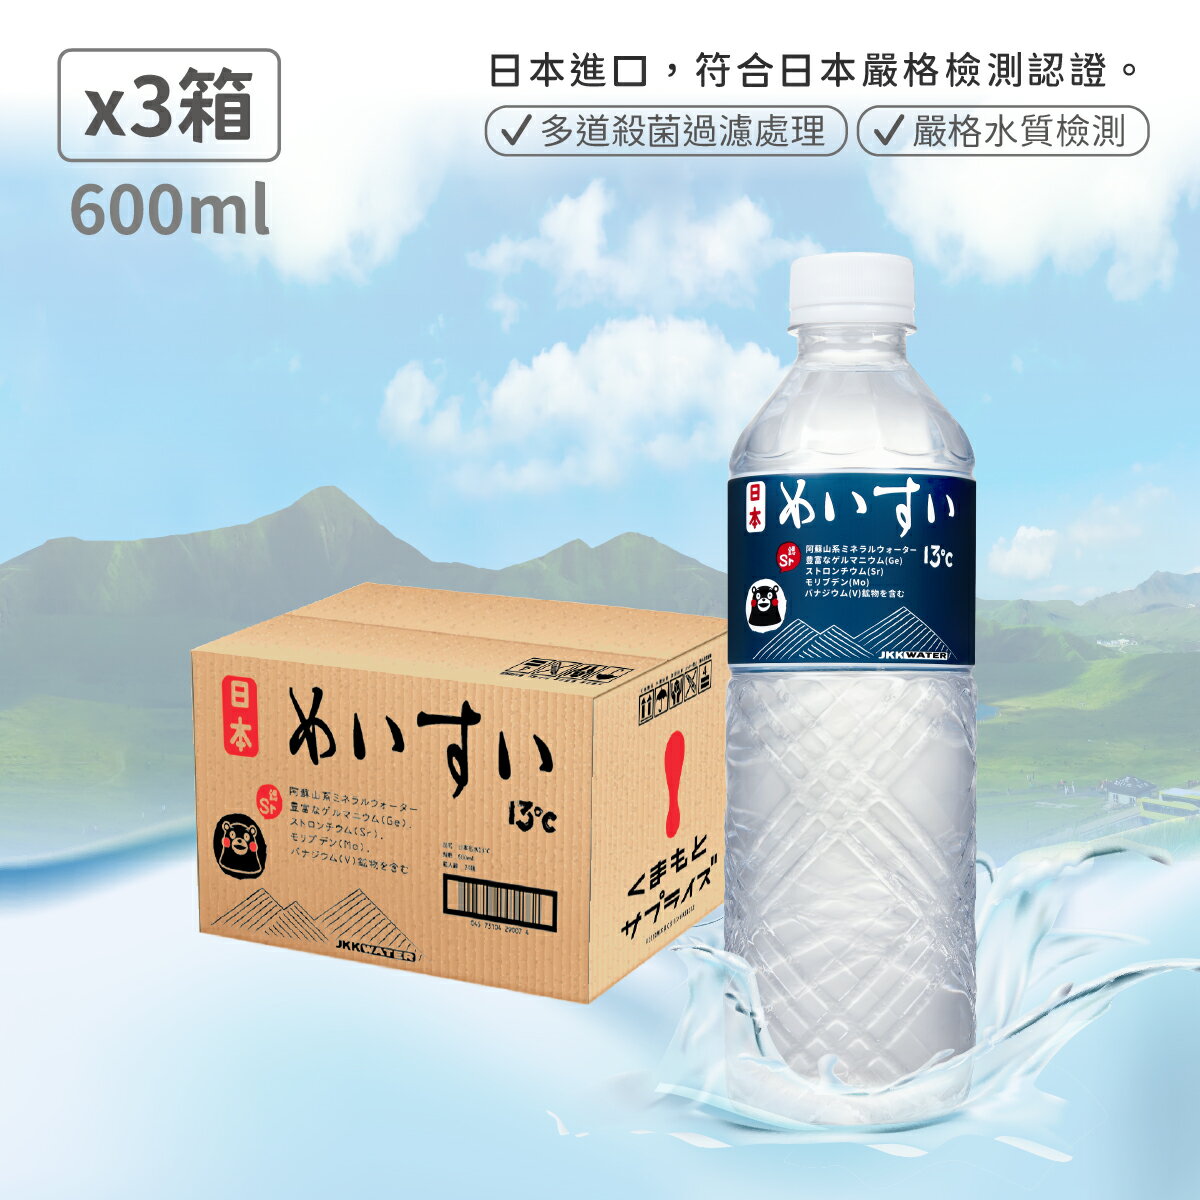 【日本名水13度C】JKKWATER(600mlx24) 日本原裝進口【礦泉水/天然水/軟水】X3箱